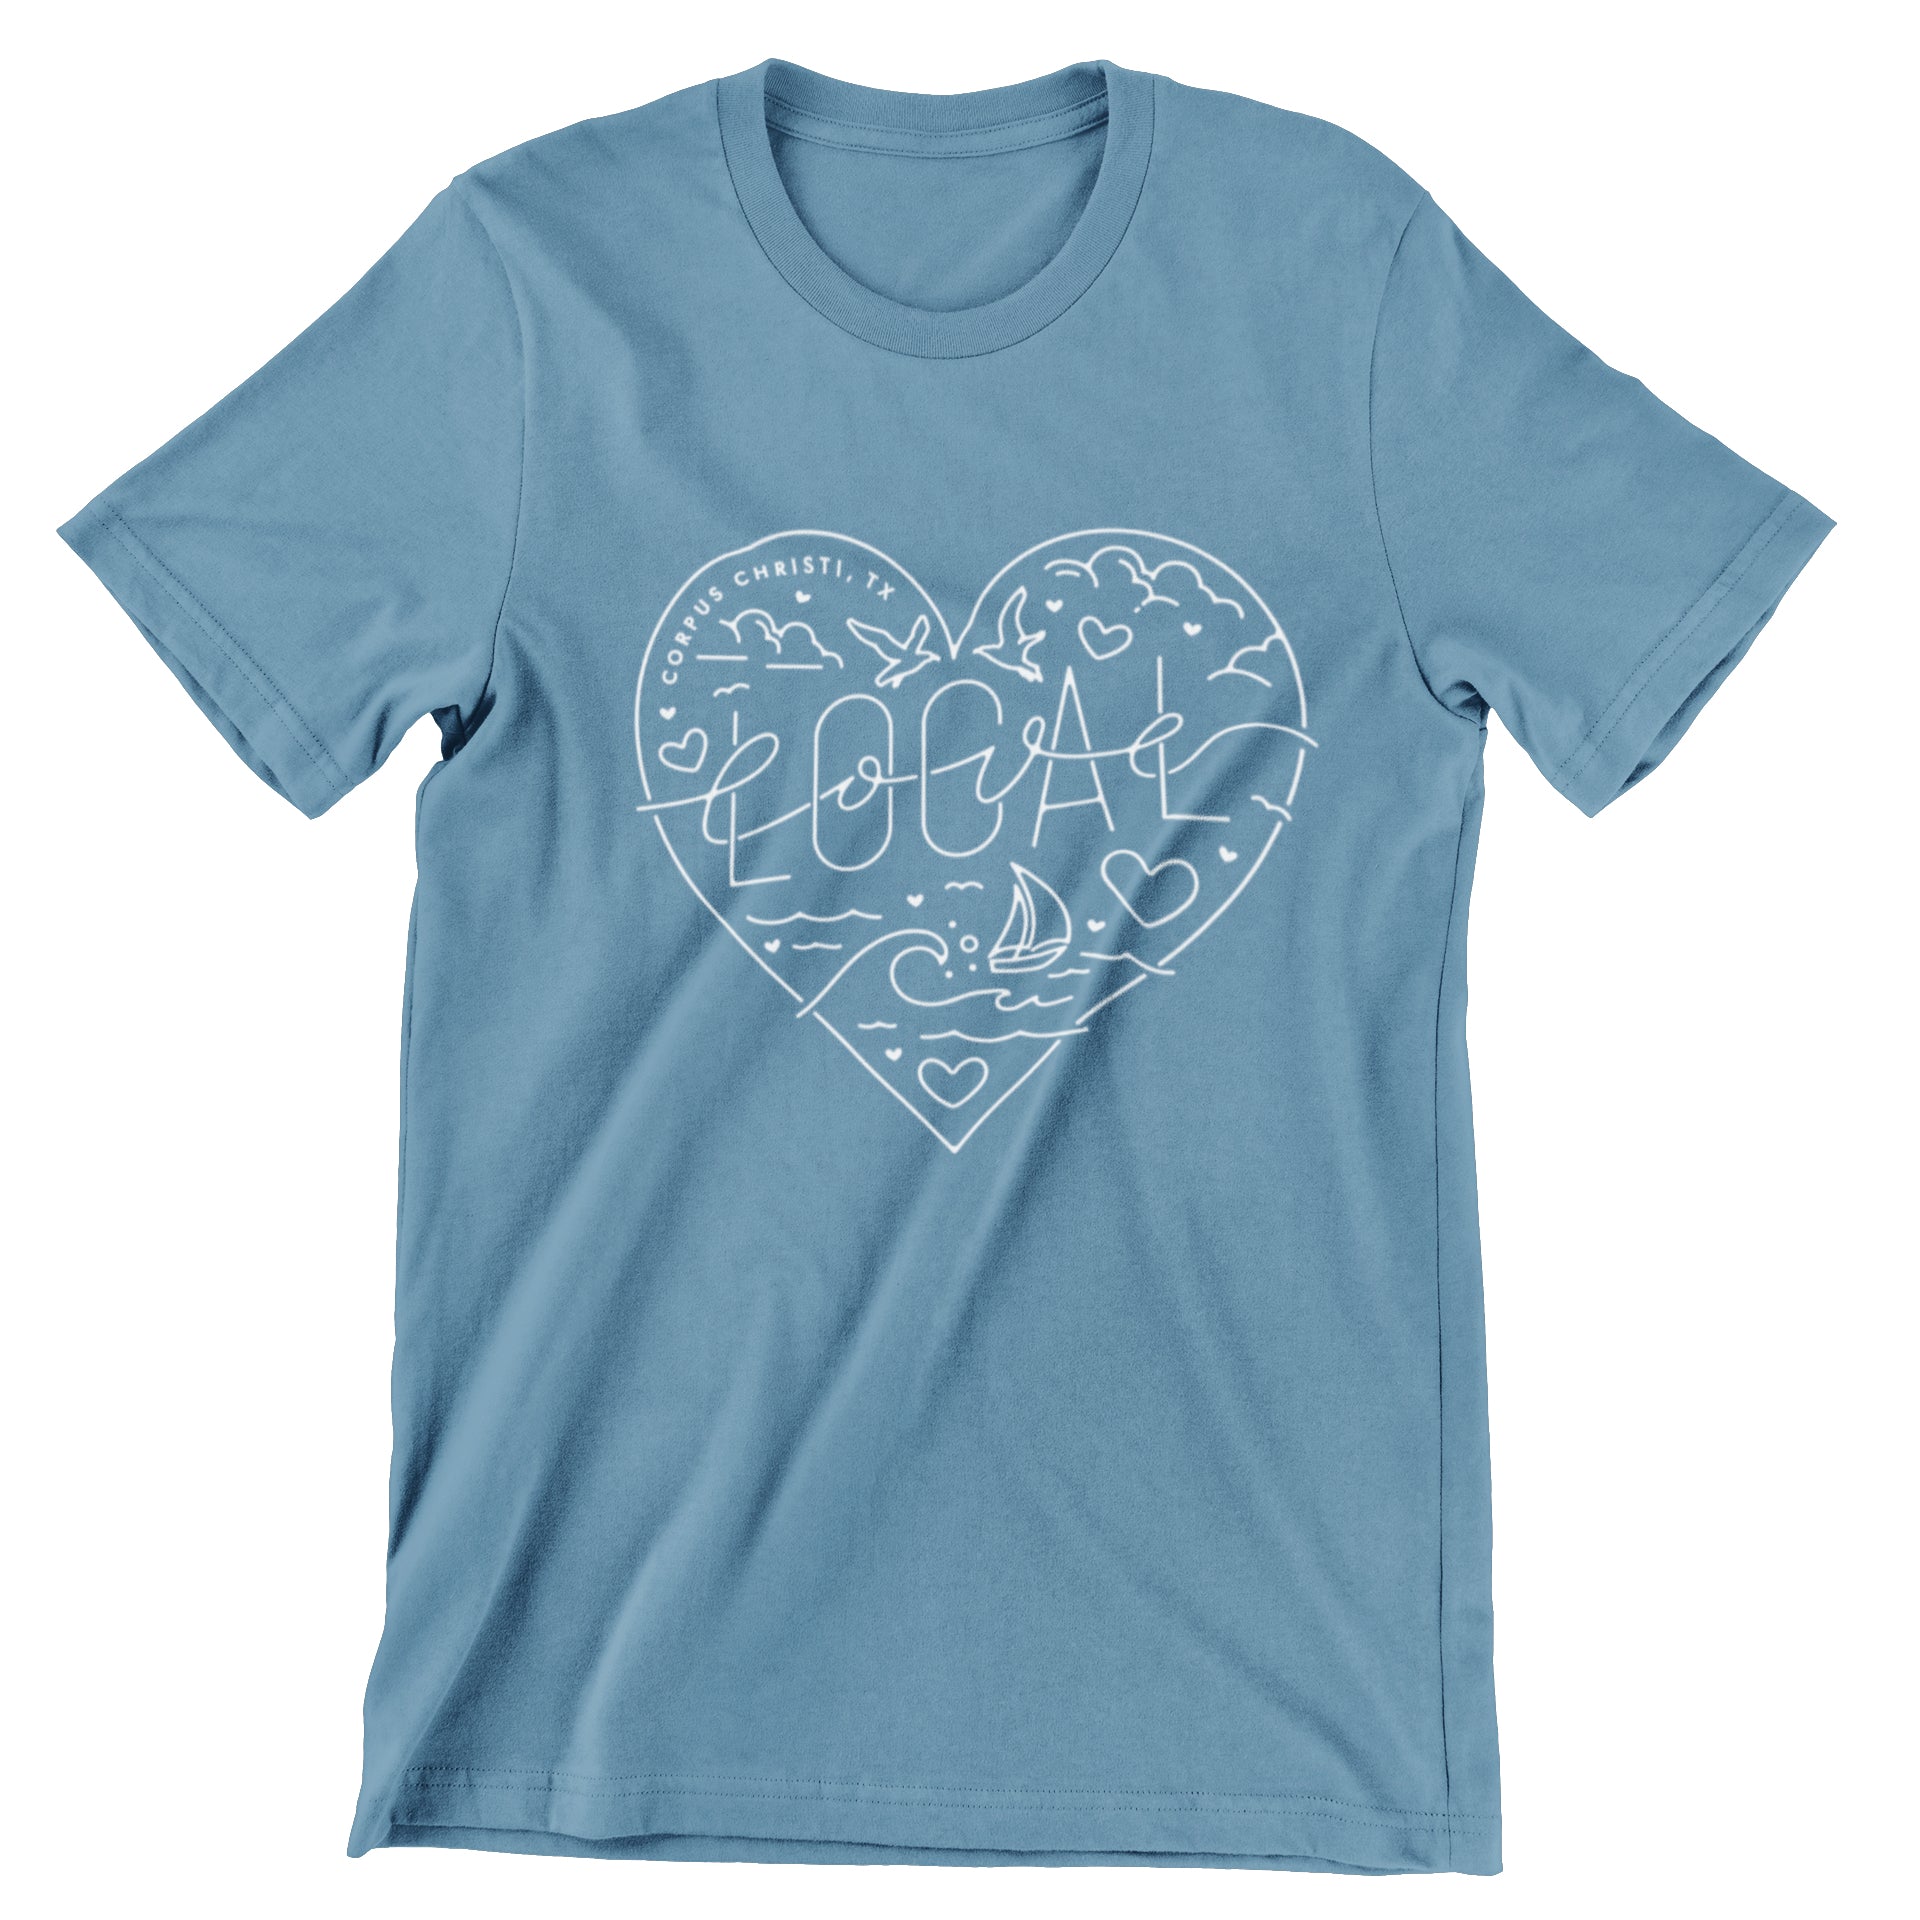 Local Love T-Shirt